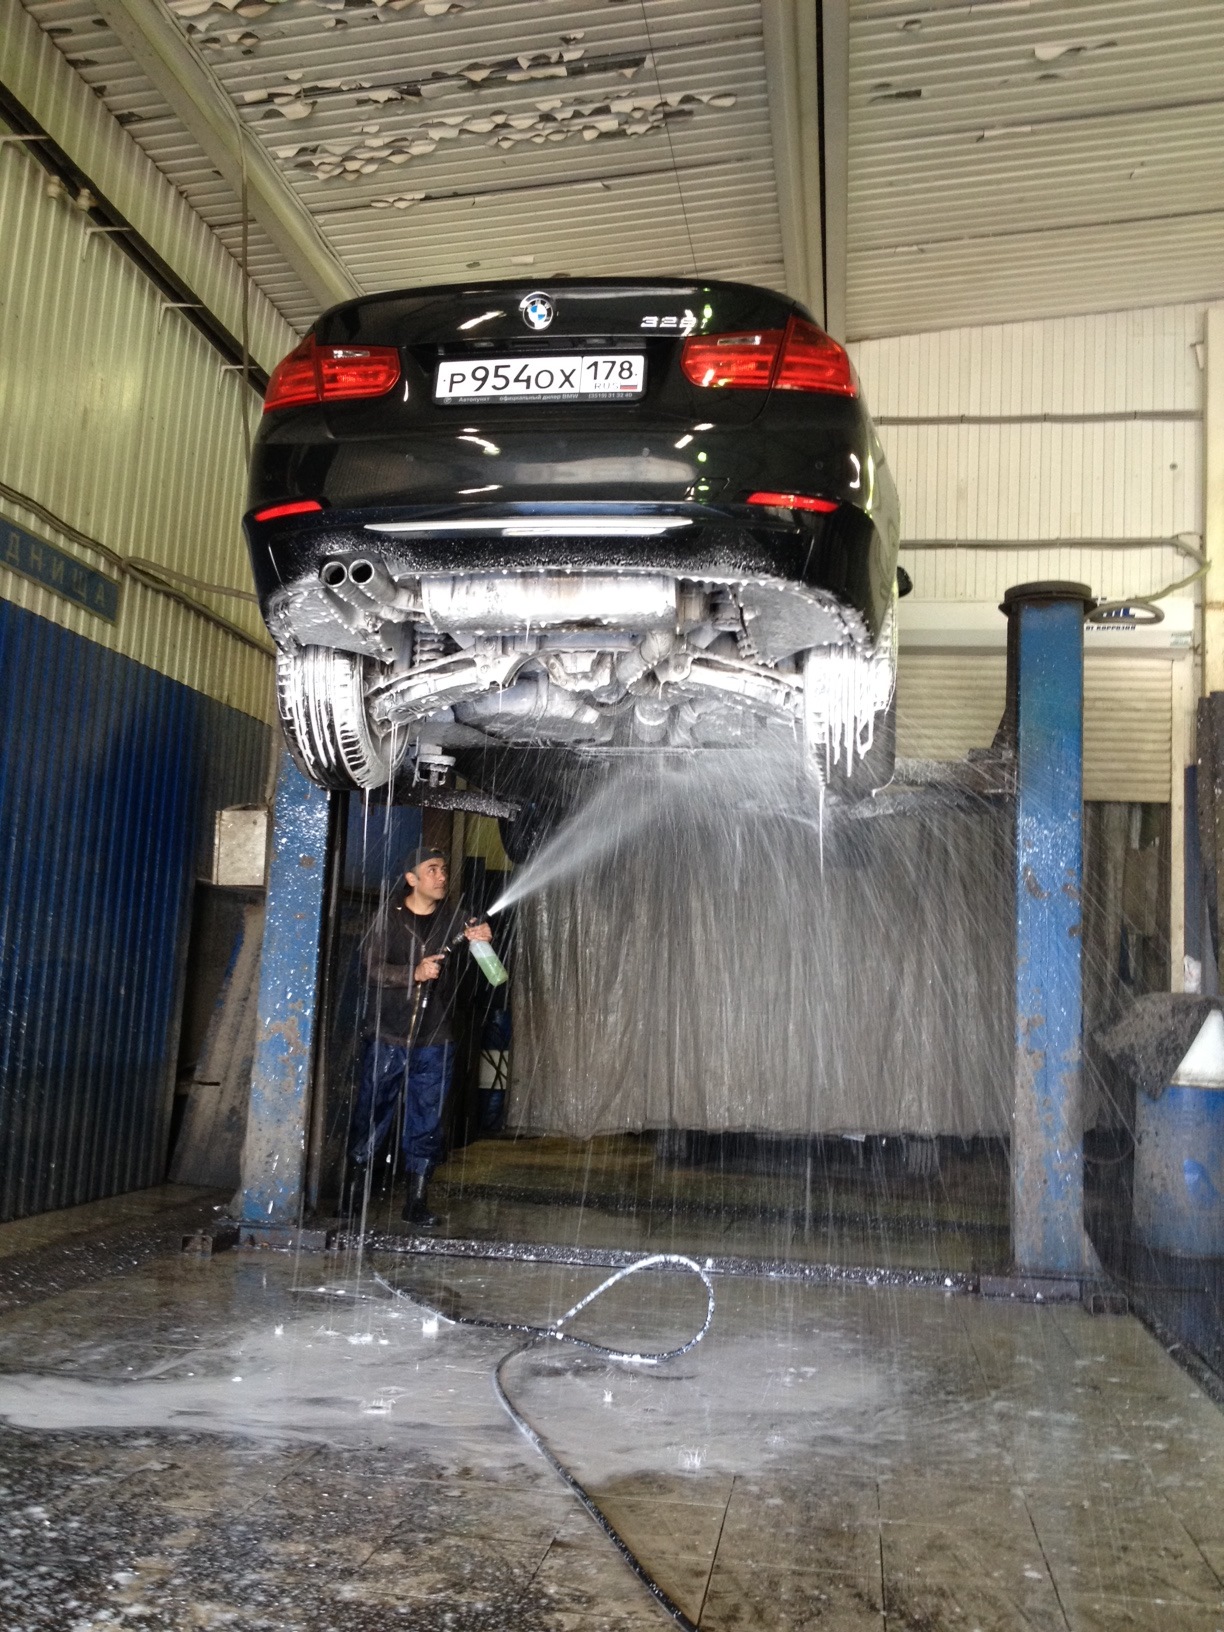 Почему машину моют снизу